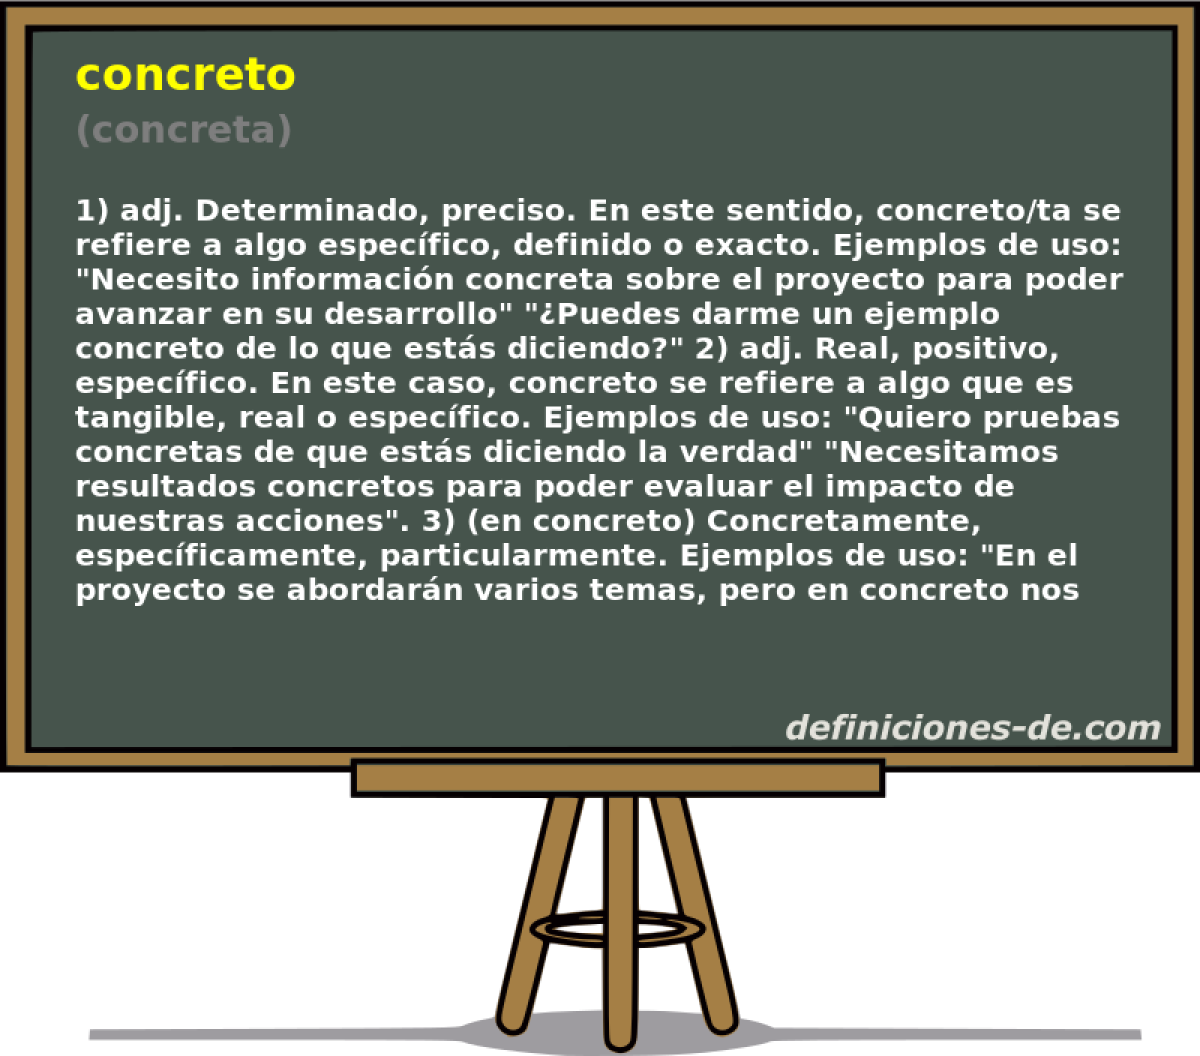 concreto (concreta)